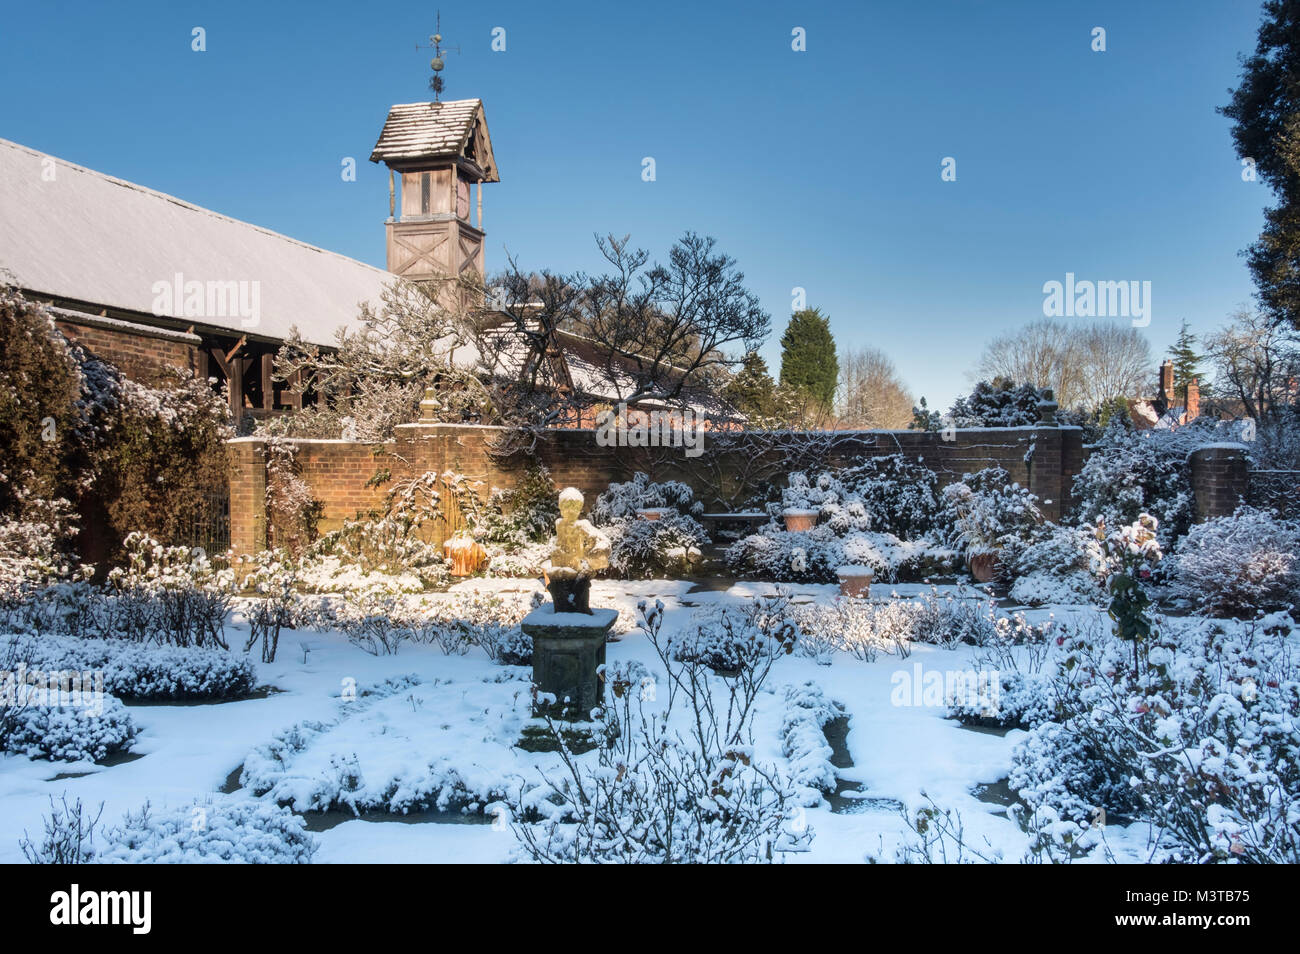 La Grange Cruck et tour de l'horloge à partir de l'hiver dans le Jardin du Pavillon, Arley Hall, Arley, Cheshire, England, UK Banque D'Images